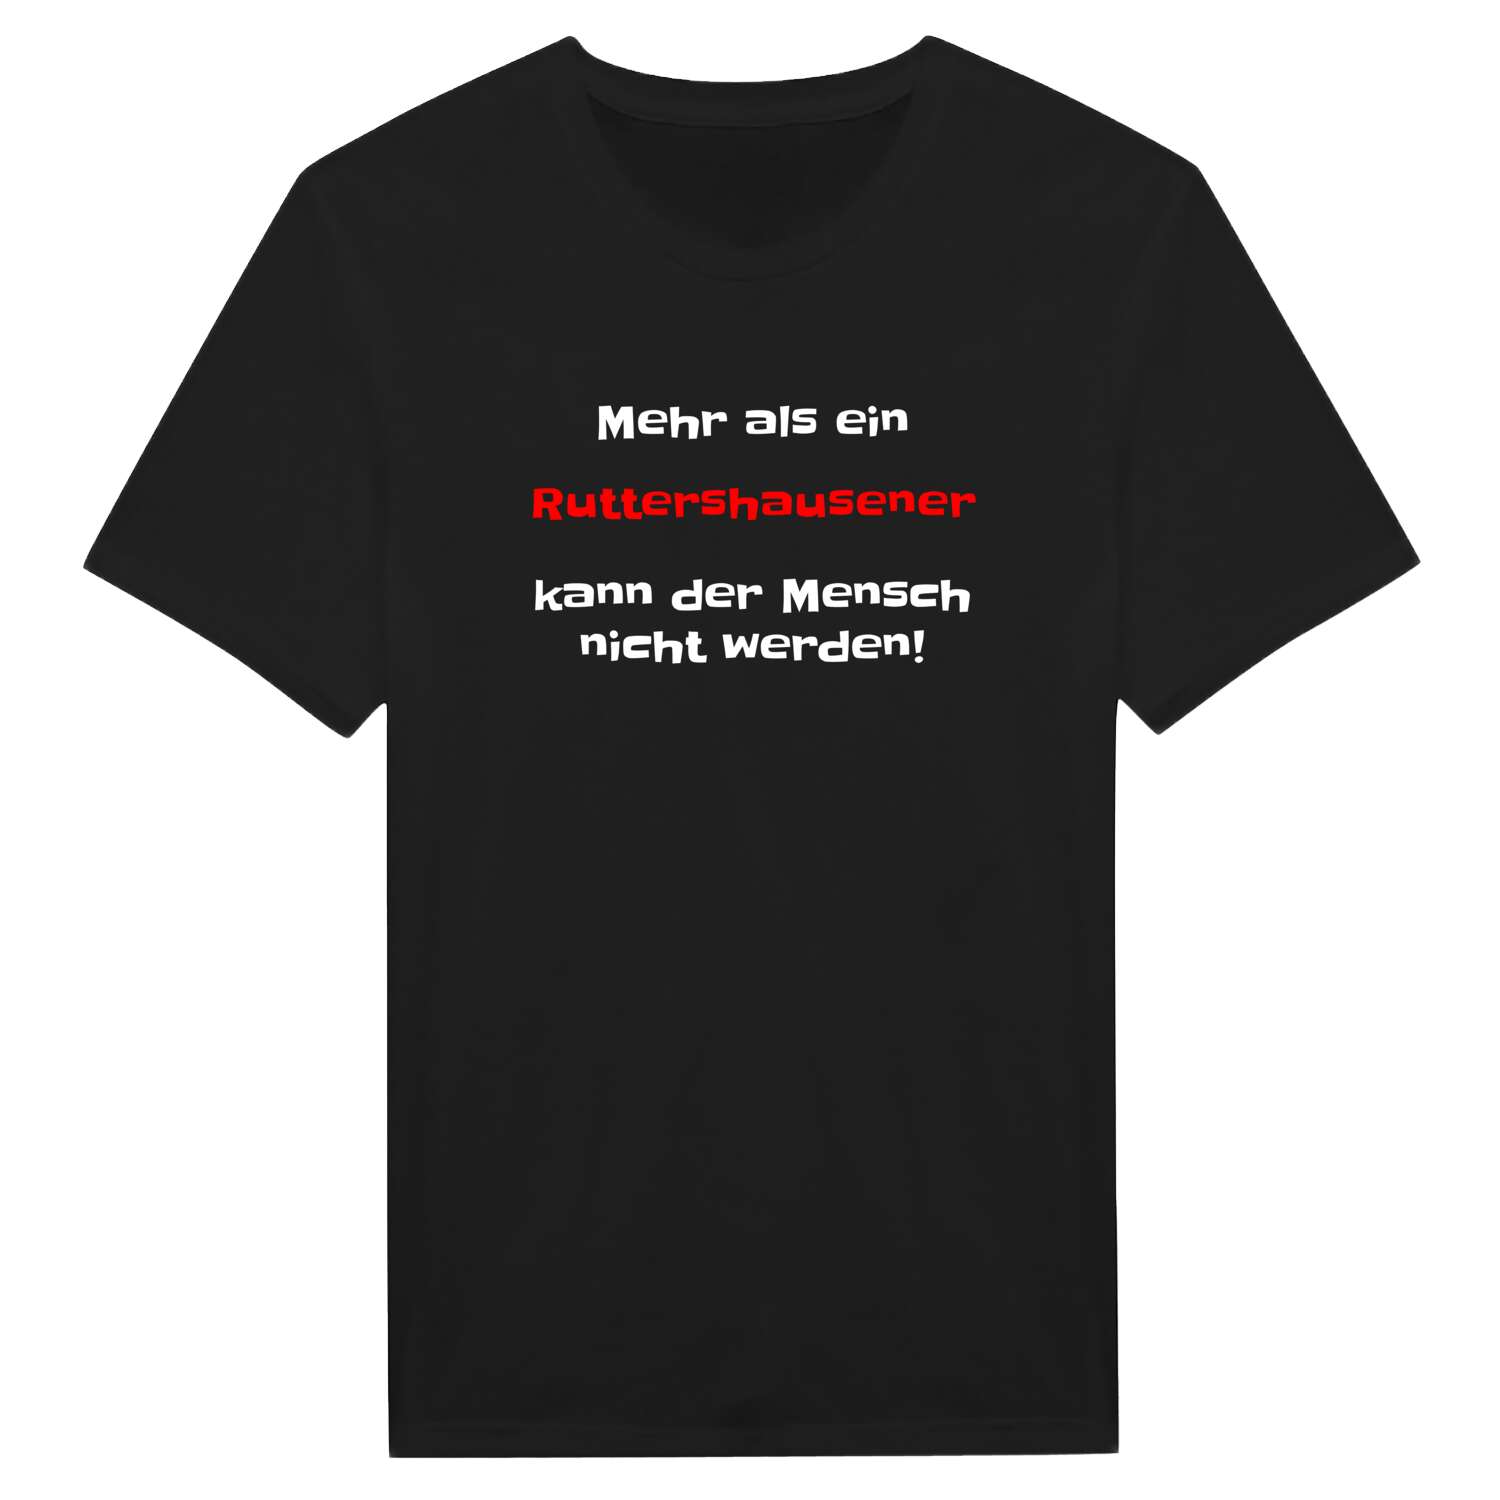 Ruttershausen T-Shirt »Mehr als ein«